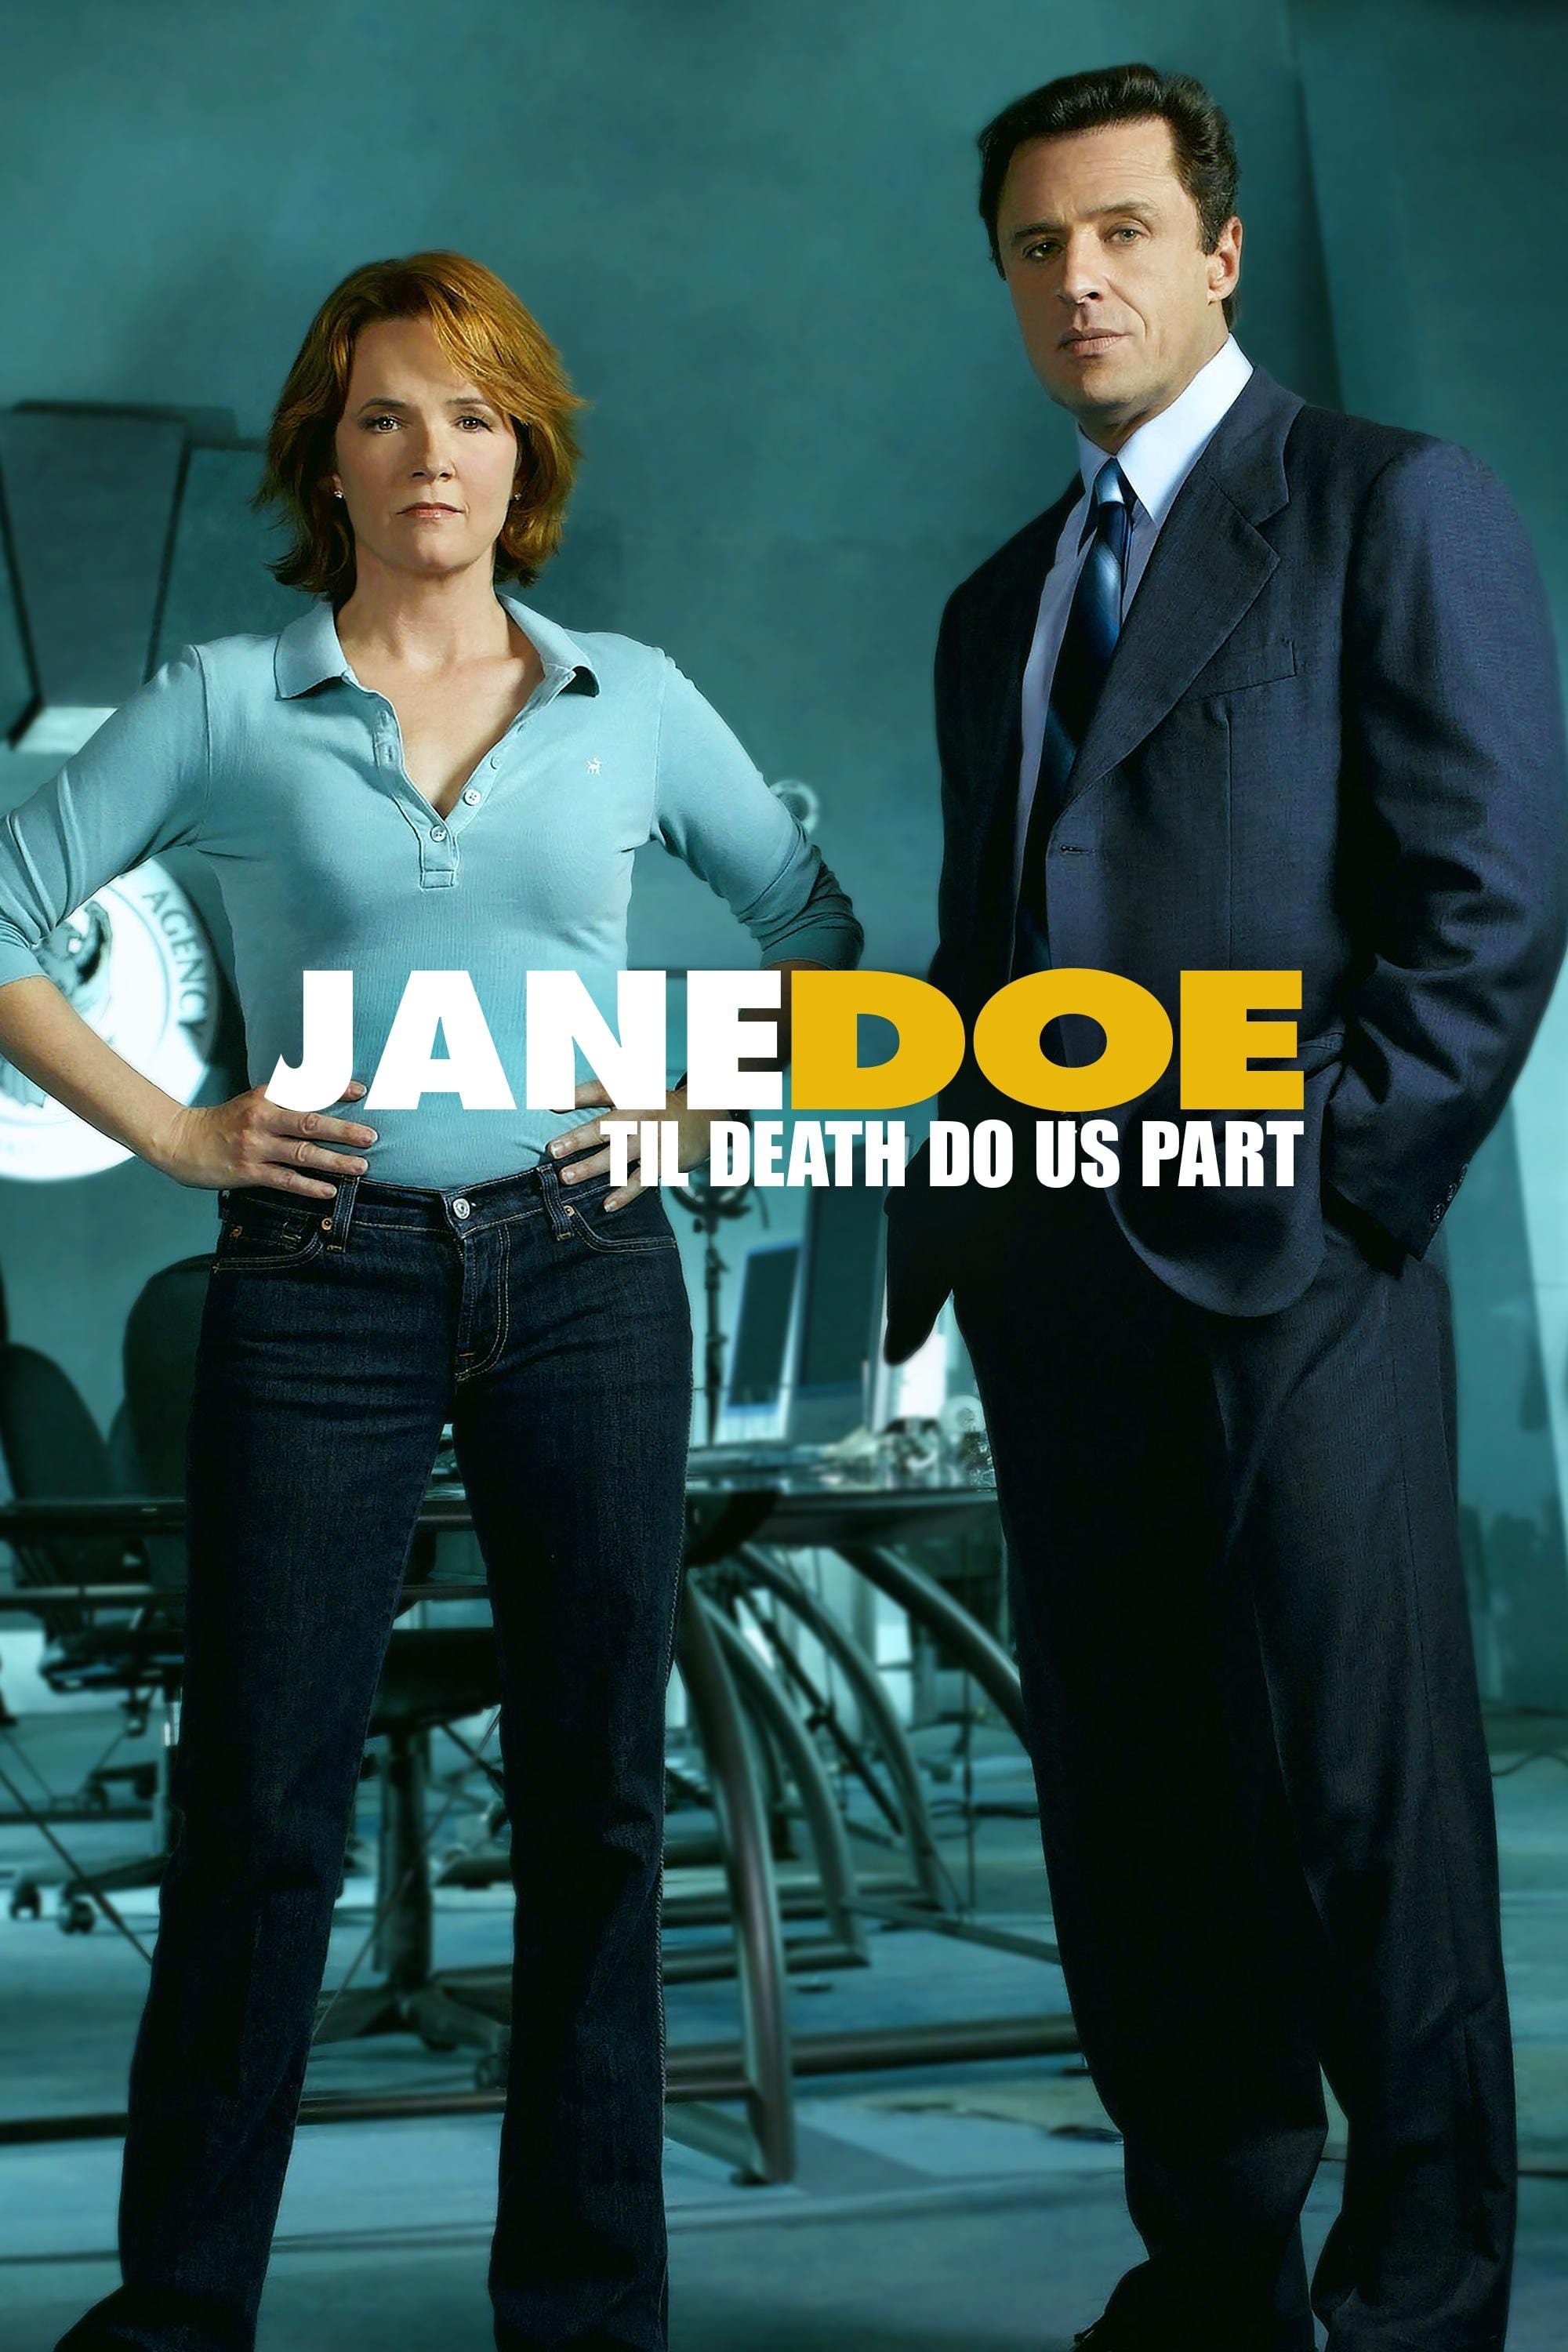 Jane Doe: Til Death Do Us Part film